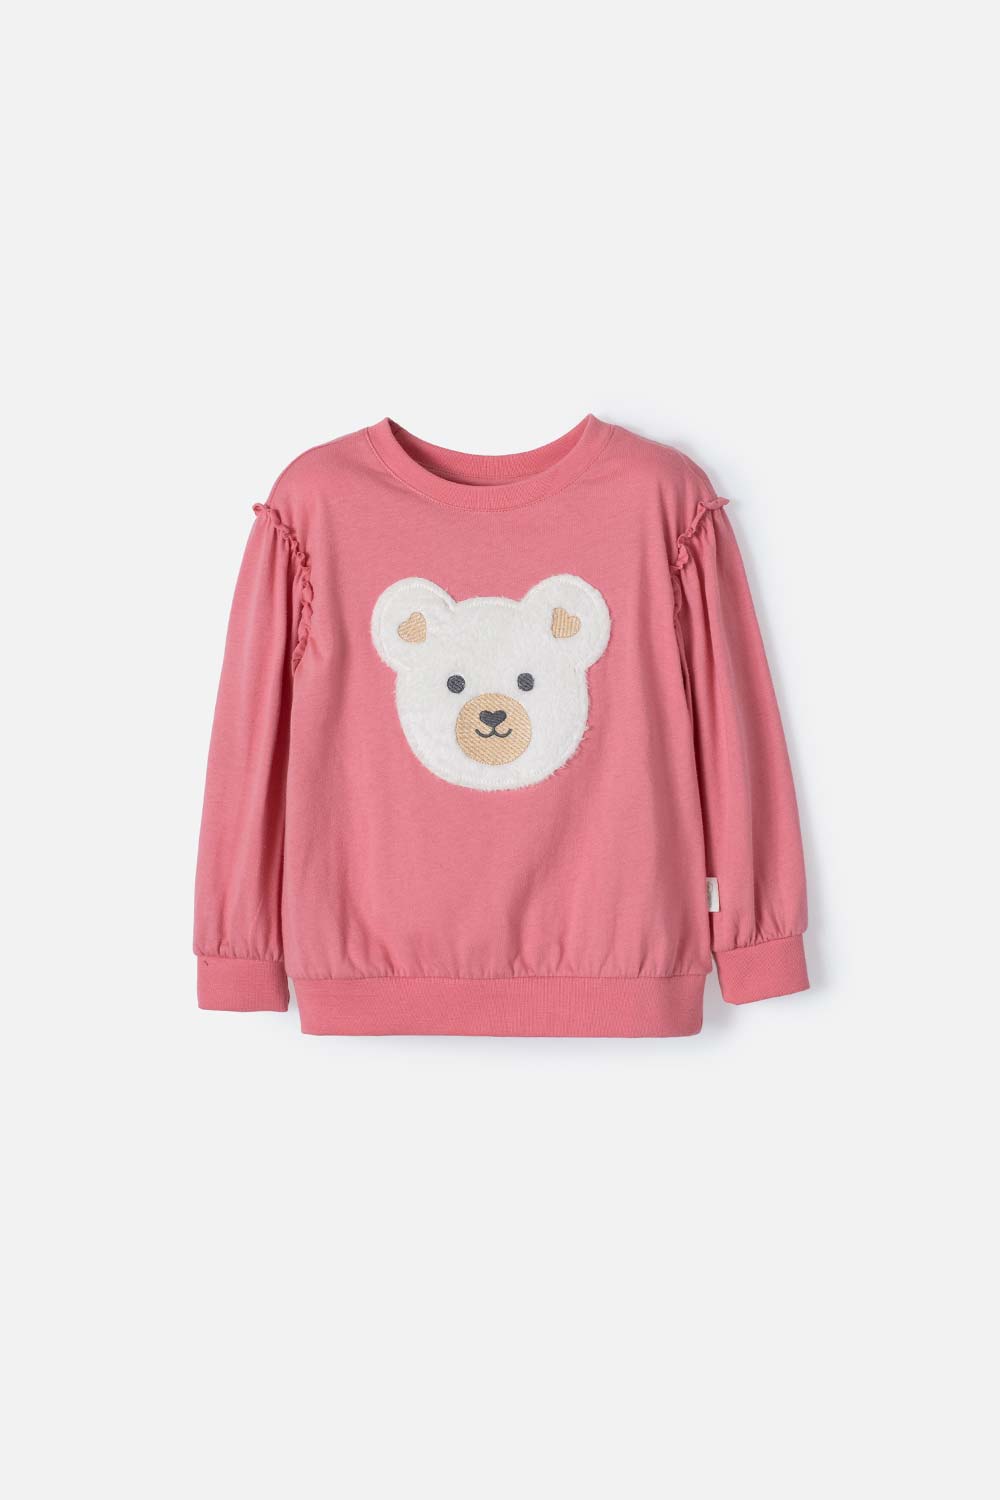 Camiseta de LittleMic manga larga rosa viejo para niña 2T a 5T 2T-0